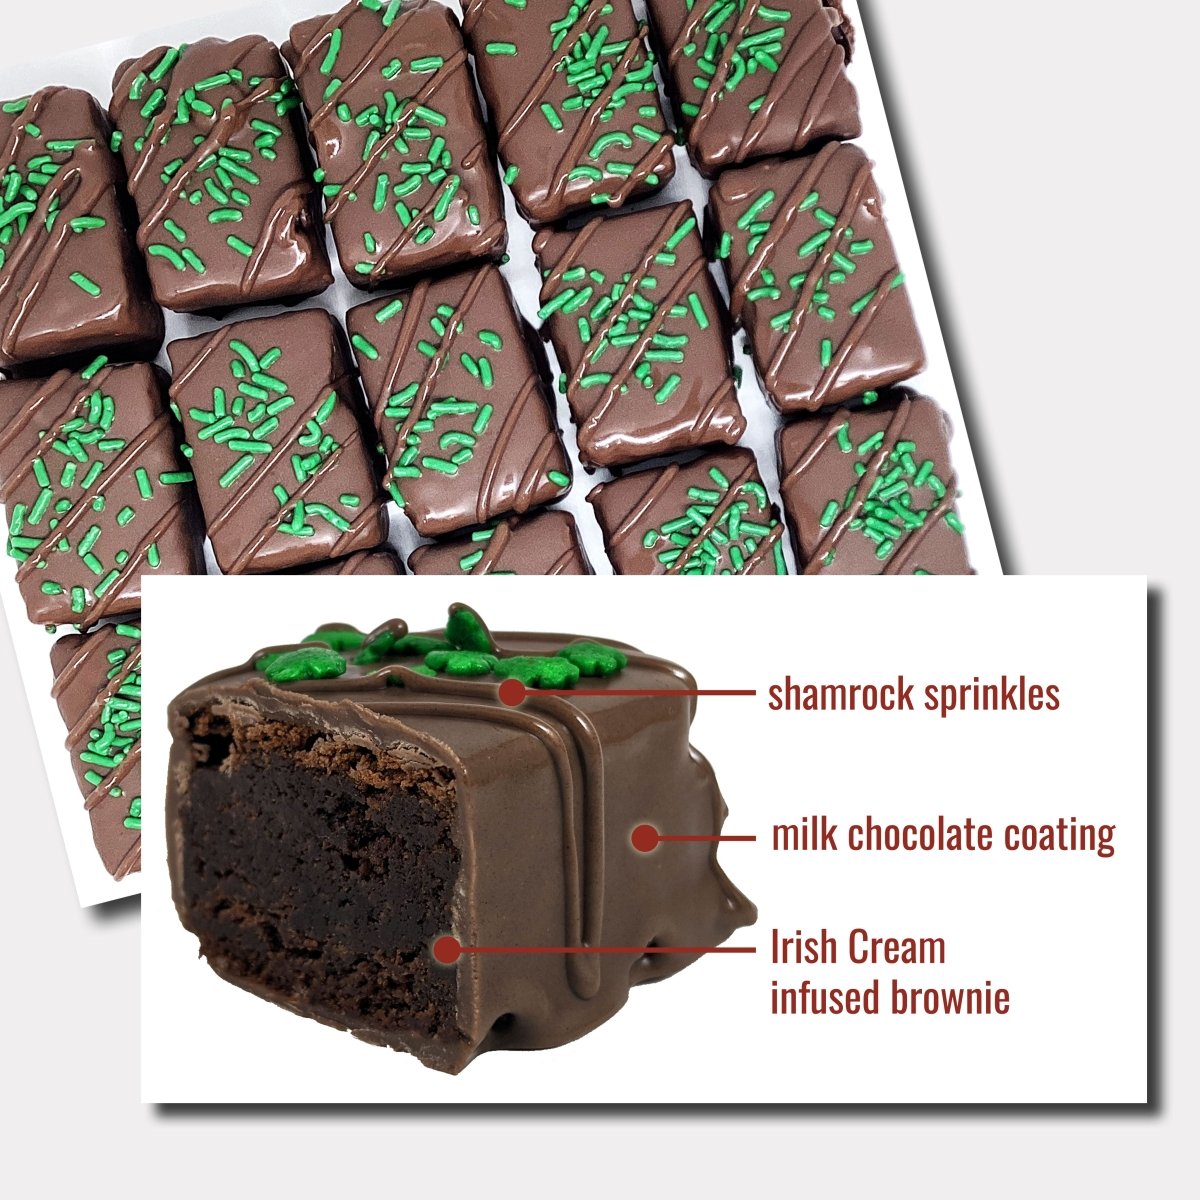 Irish Cream Brownie Bites - Nettie's Craft Brownies